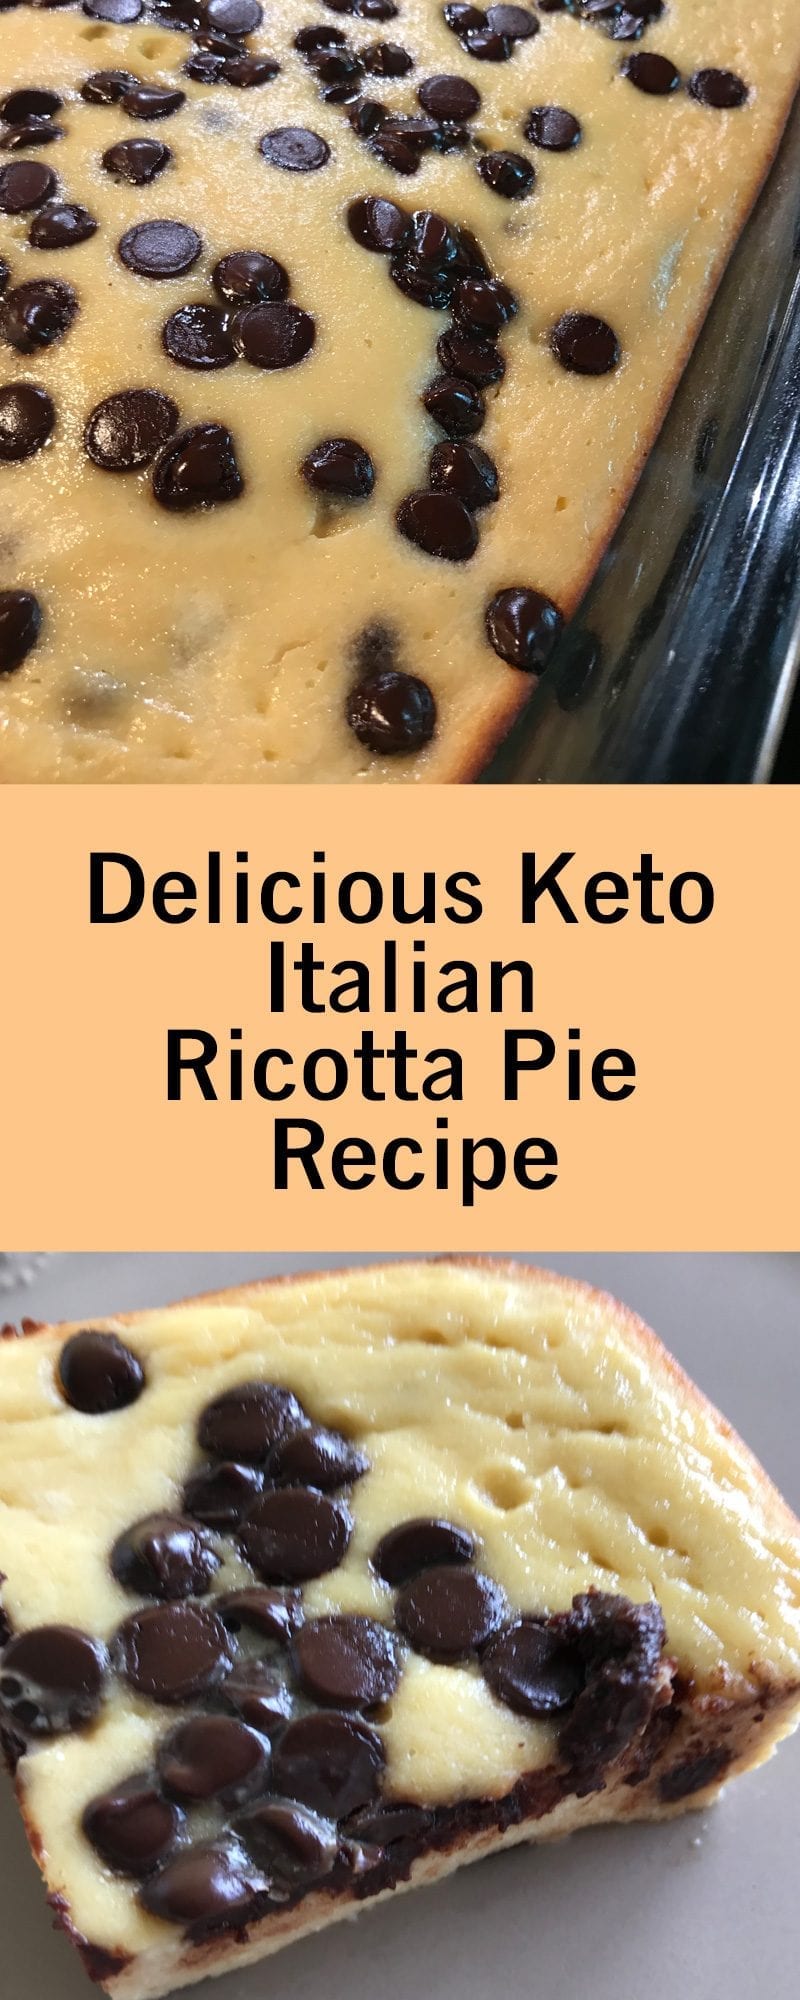 Delicious Keto Italian Ricotta Pie Recipe